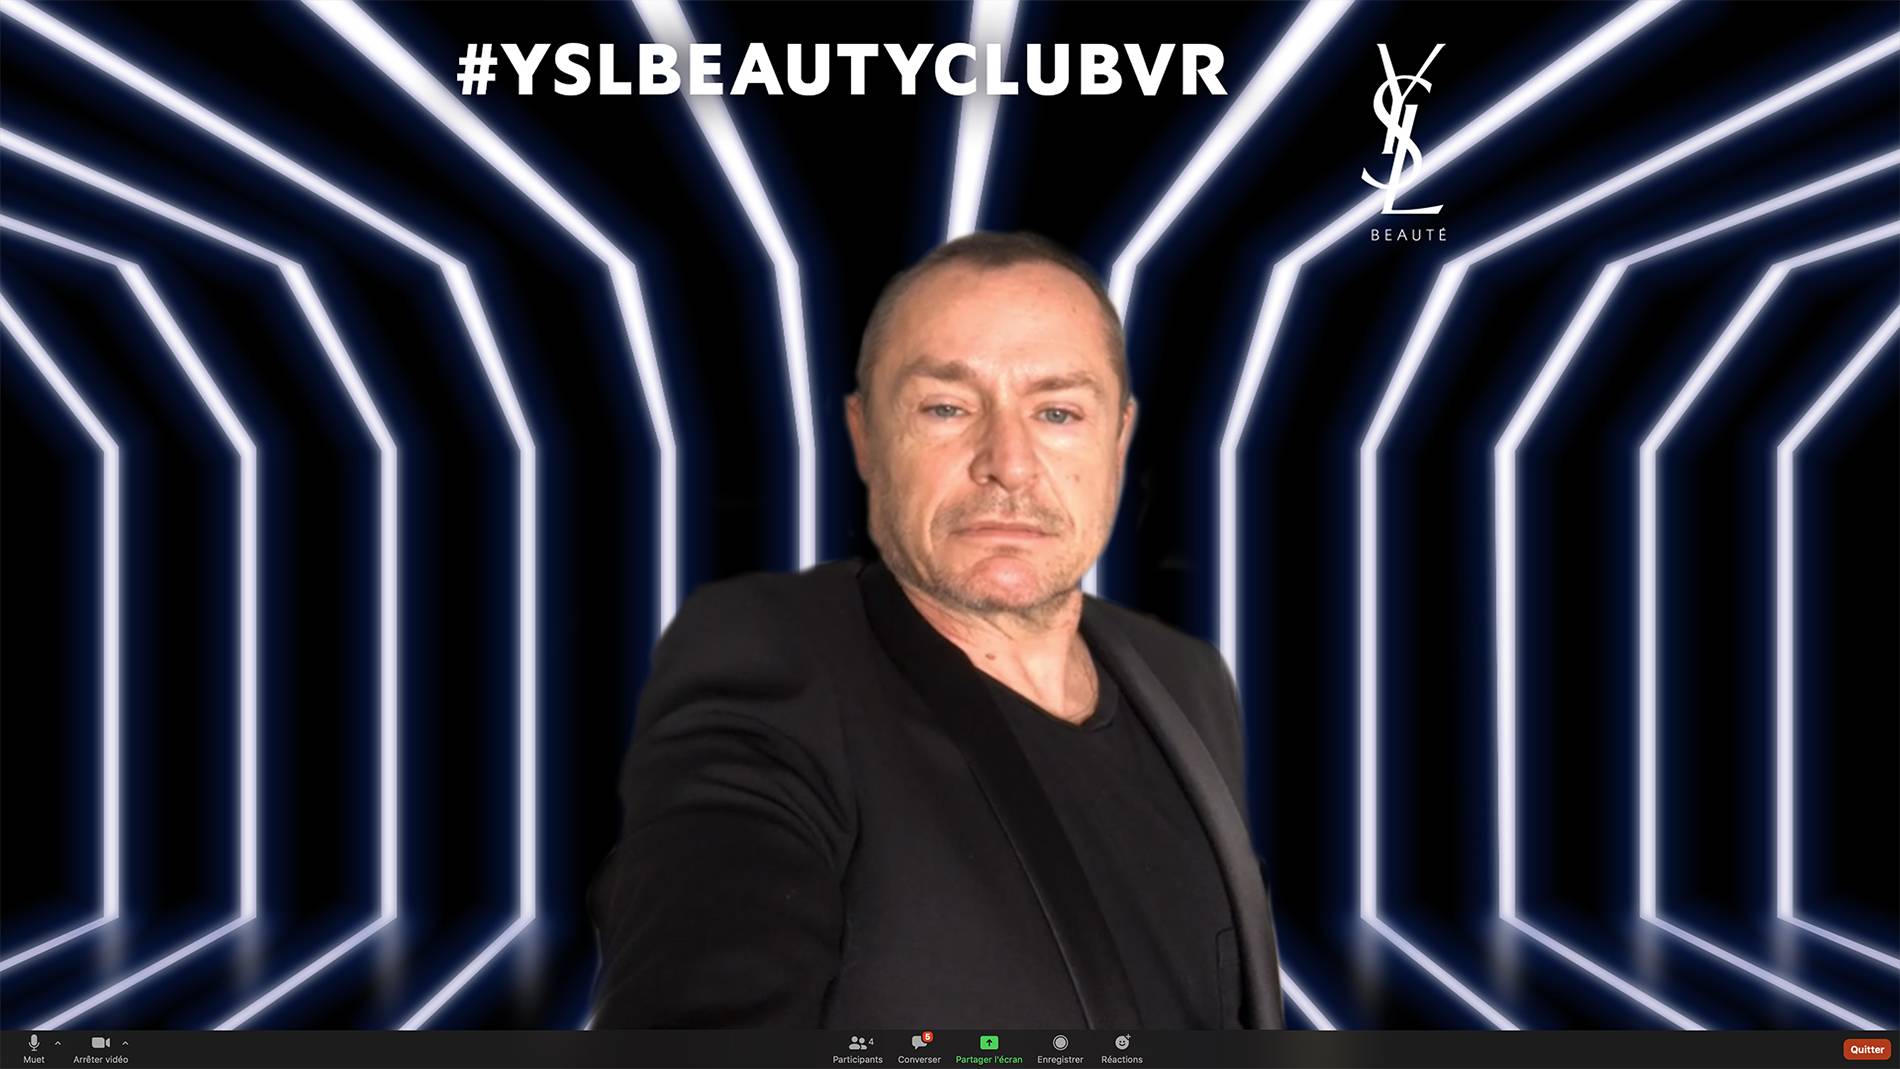 De Paris à New York, une soirée au YSL Beauty Club - Virtual Room